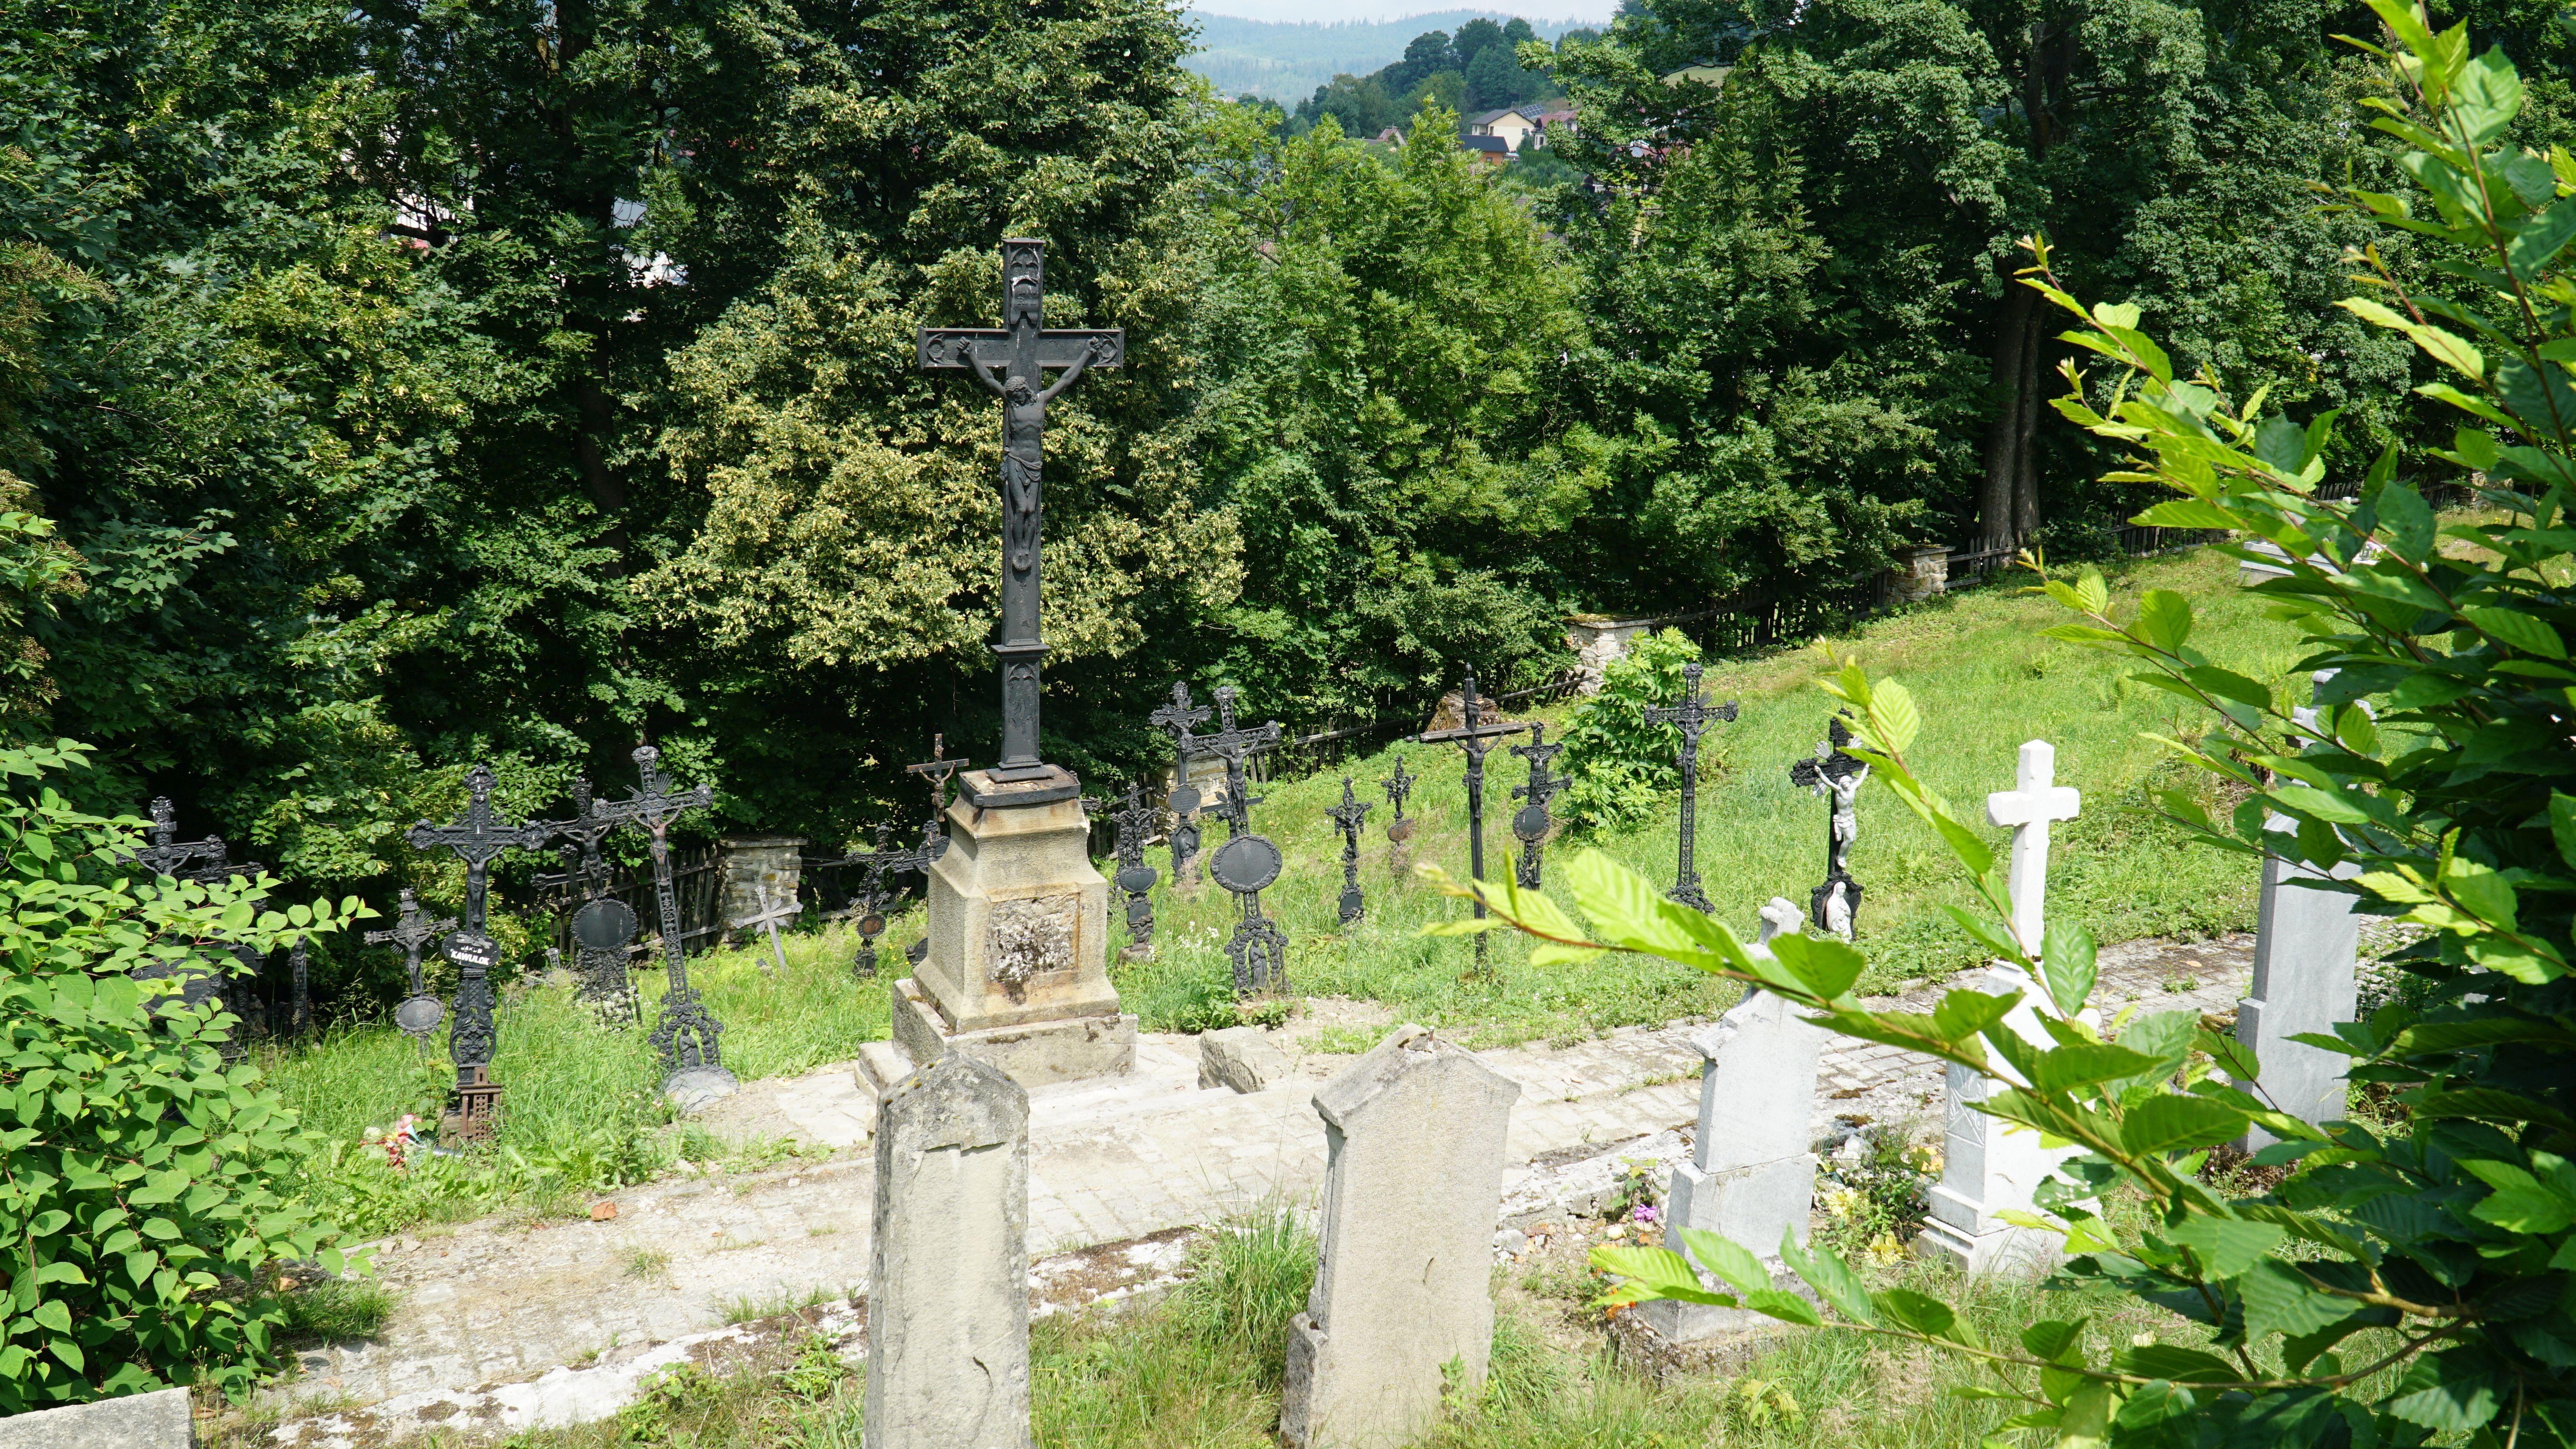 Fragment starego cmentarza usytuowanego na zboczu wzniesienia. Na pierwszym planie widocznych
jest kilka kamiennych mogił, w tle zaś widać kilkanaście żeliwnych krzyży.